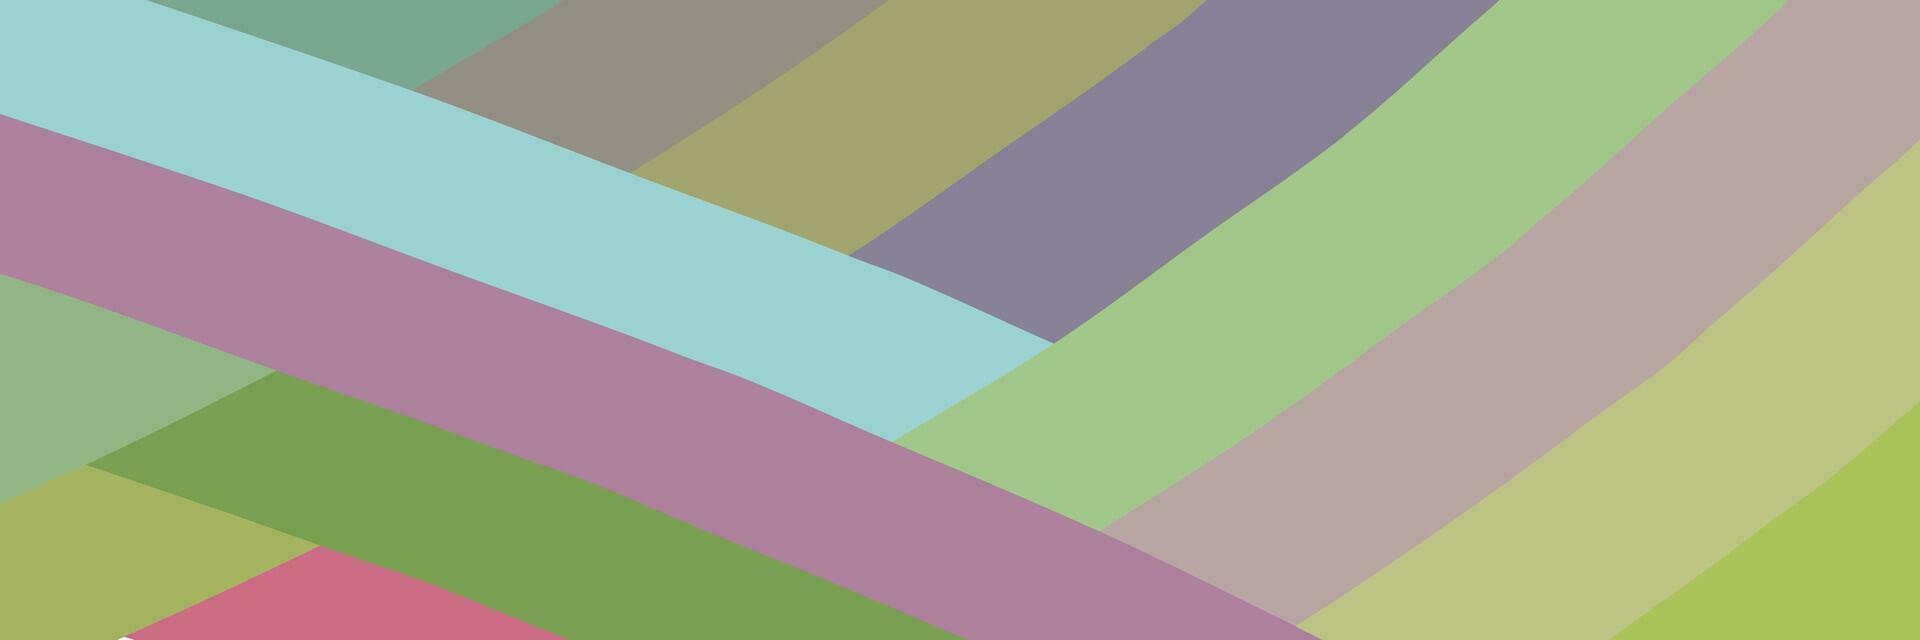 abstrakt bakgrund med vibrerande färgrik bakgrund vektor